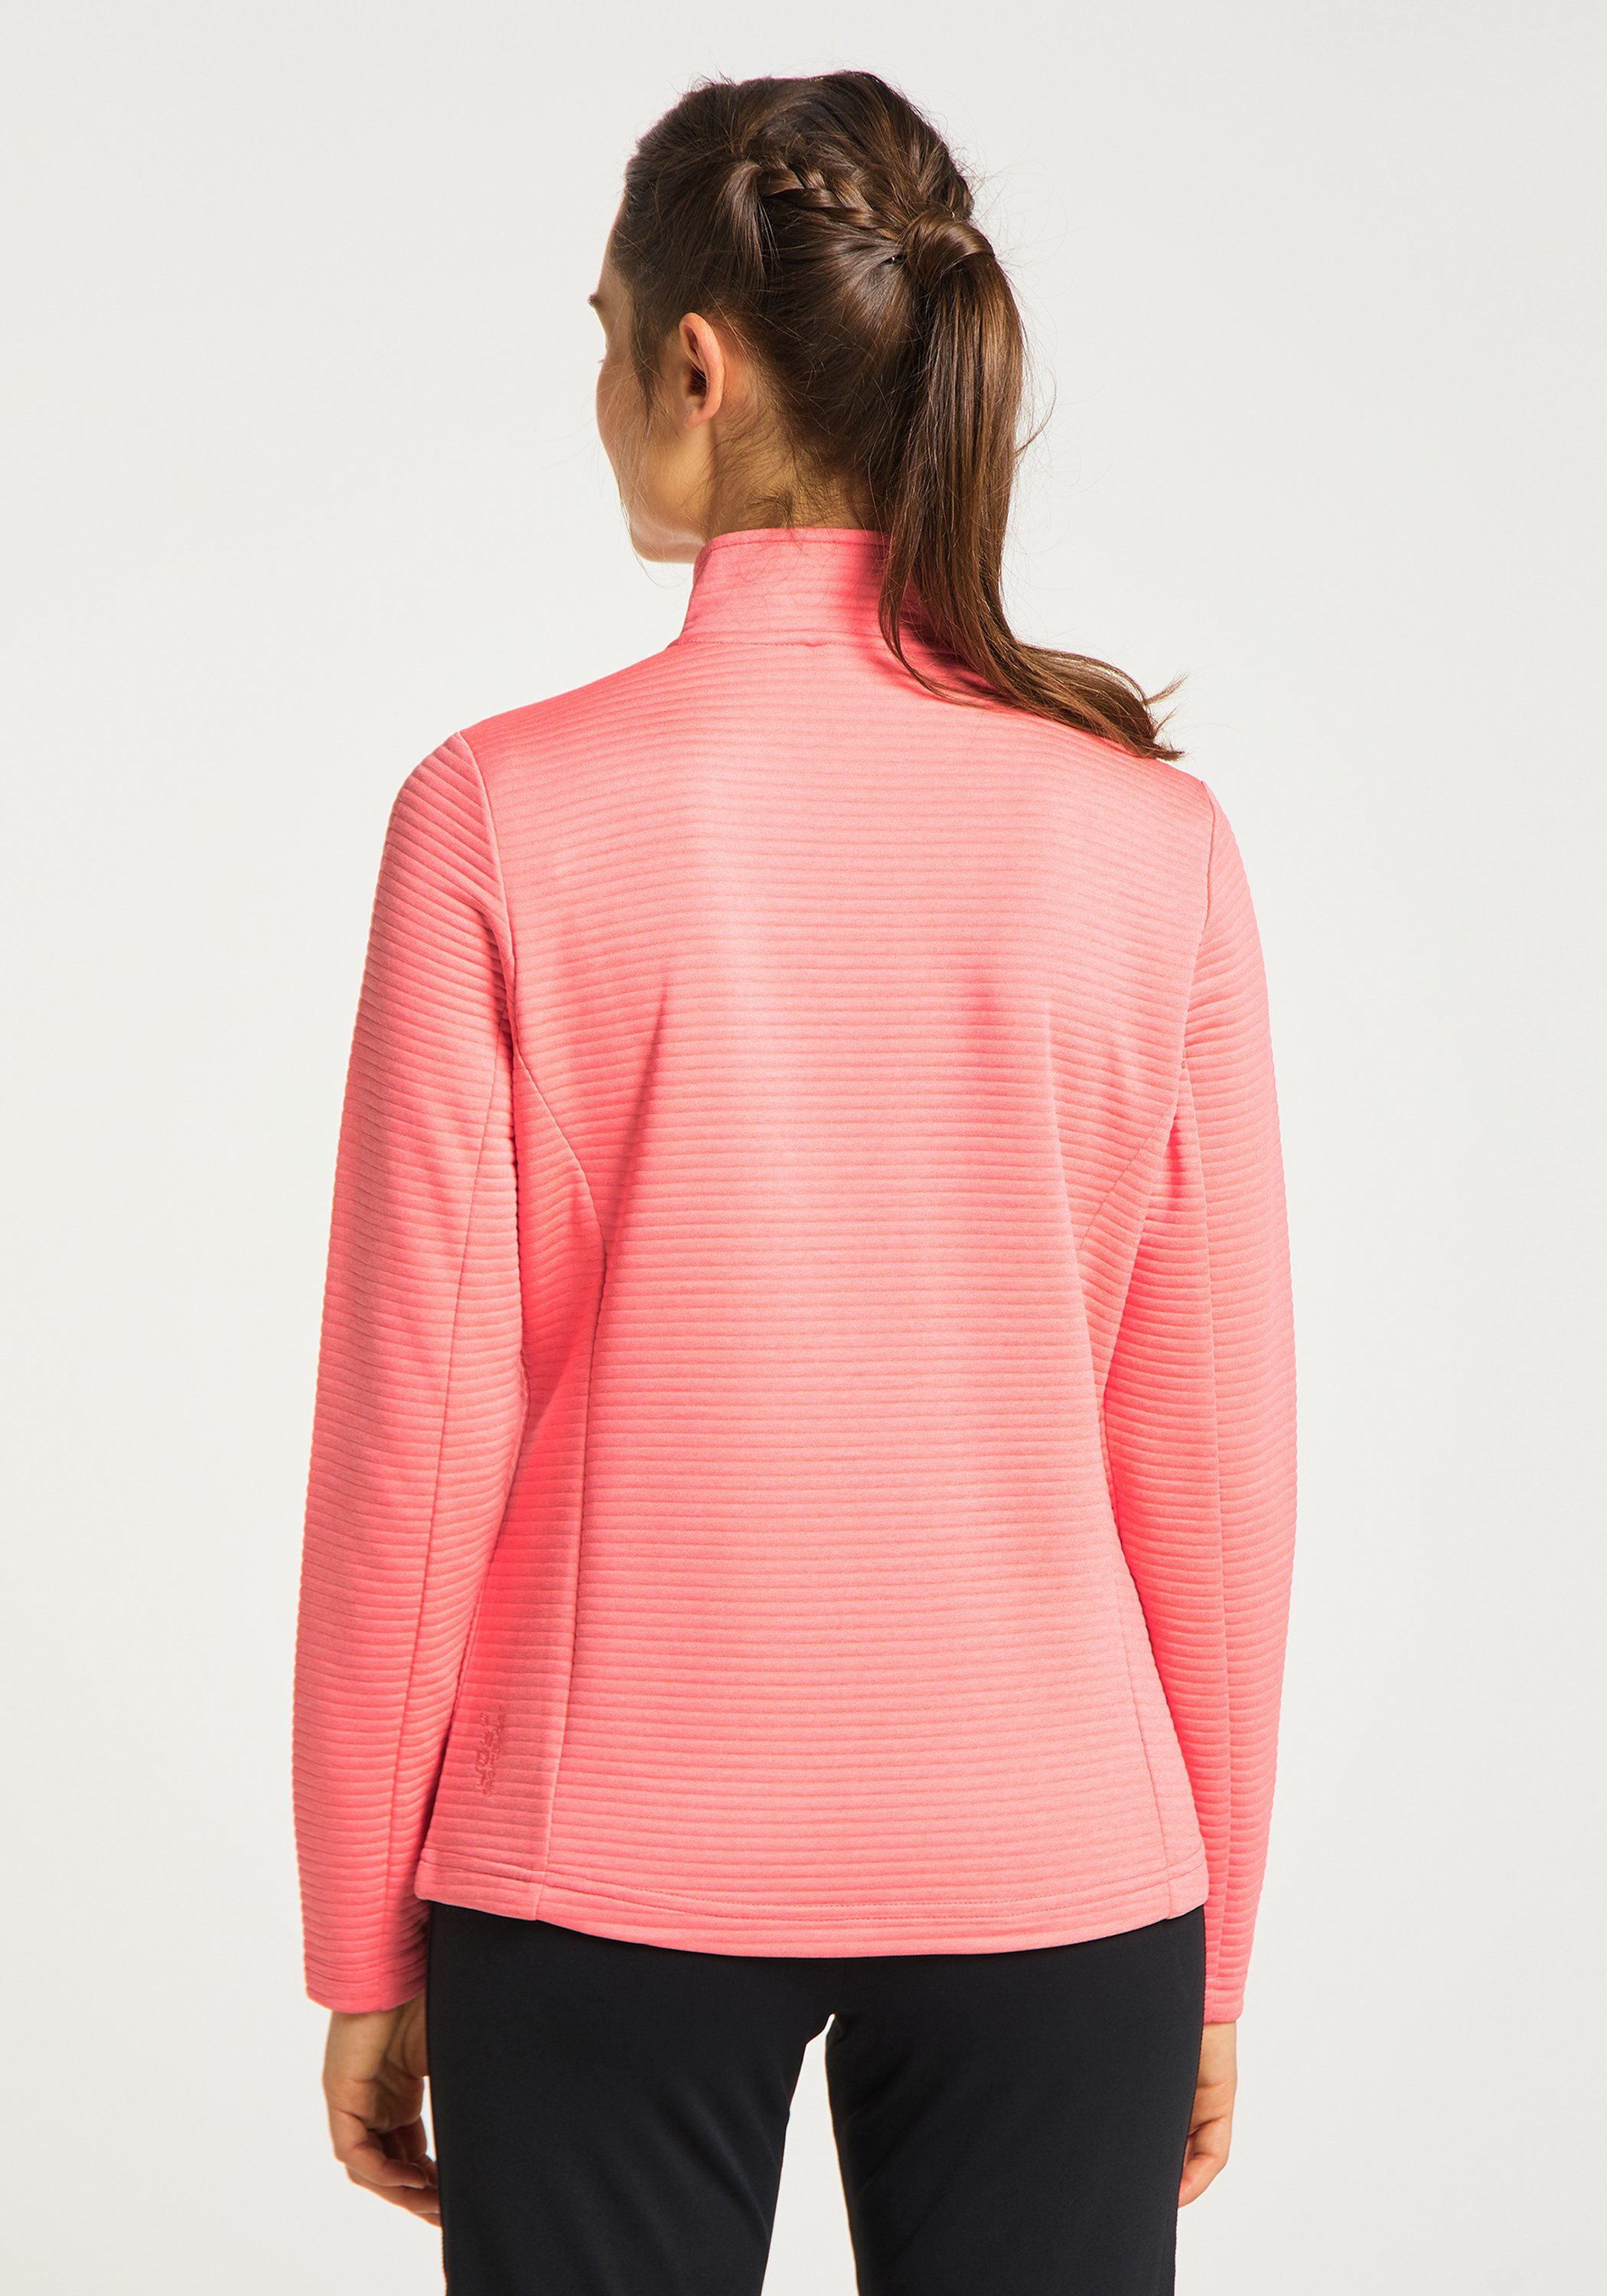 coral PEGGY Jacke Sportswear pink Trainingsjacke melange Joy